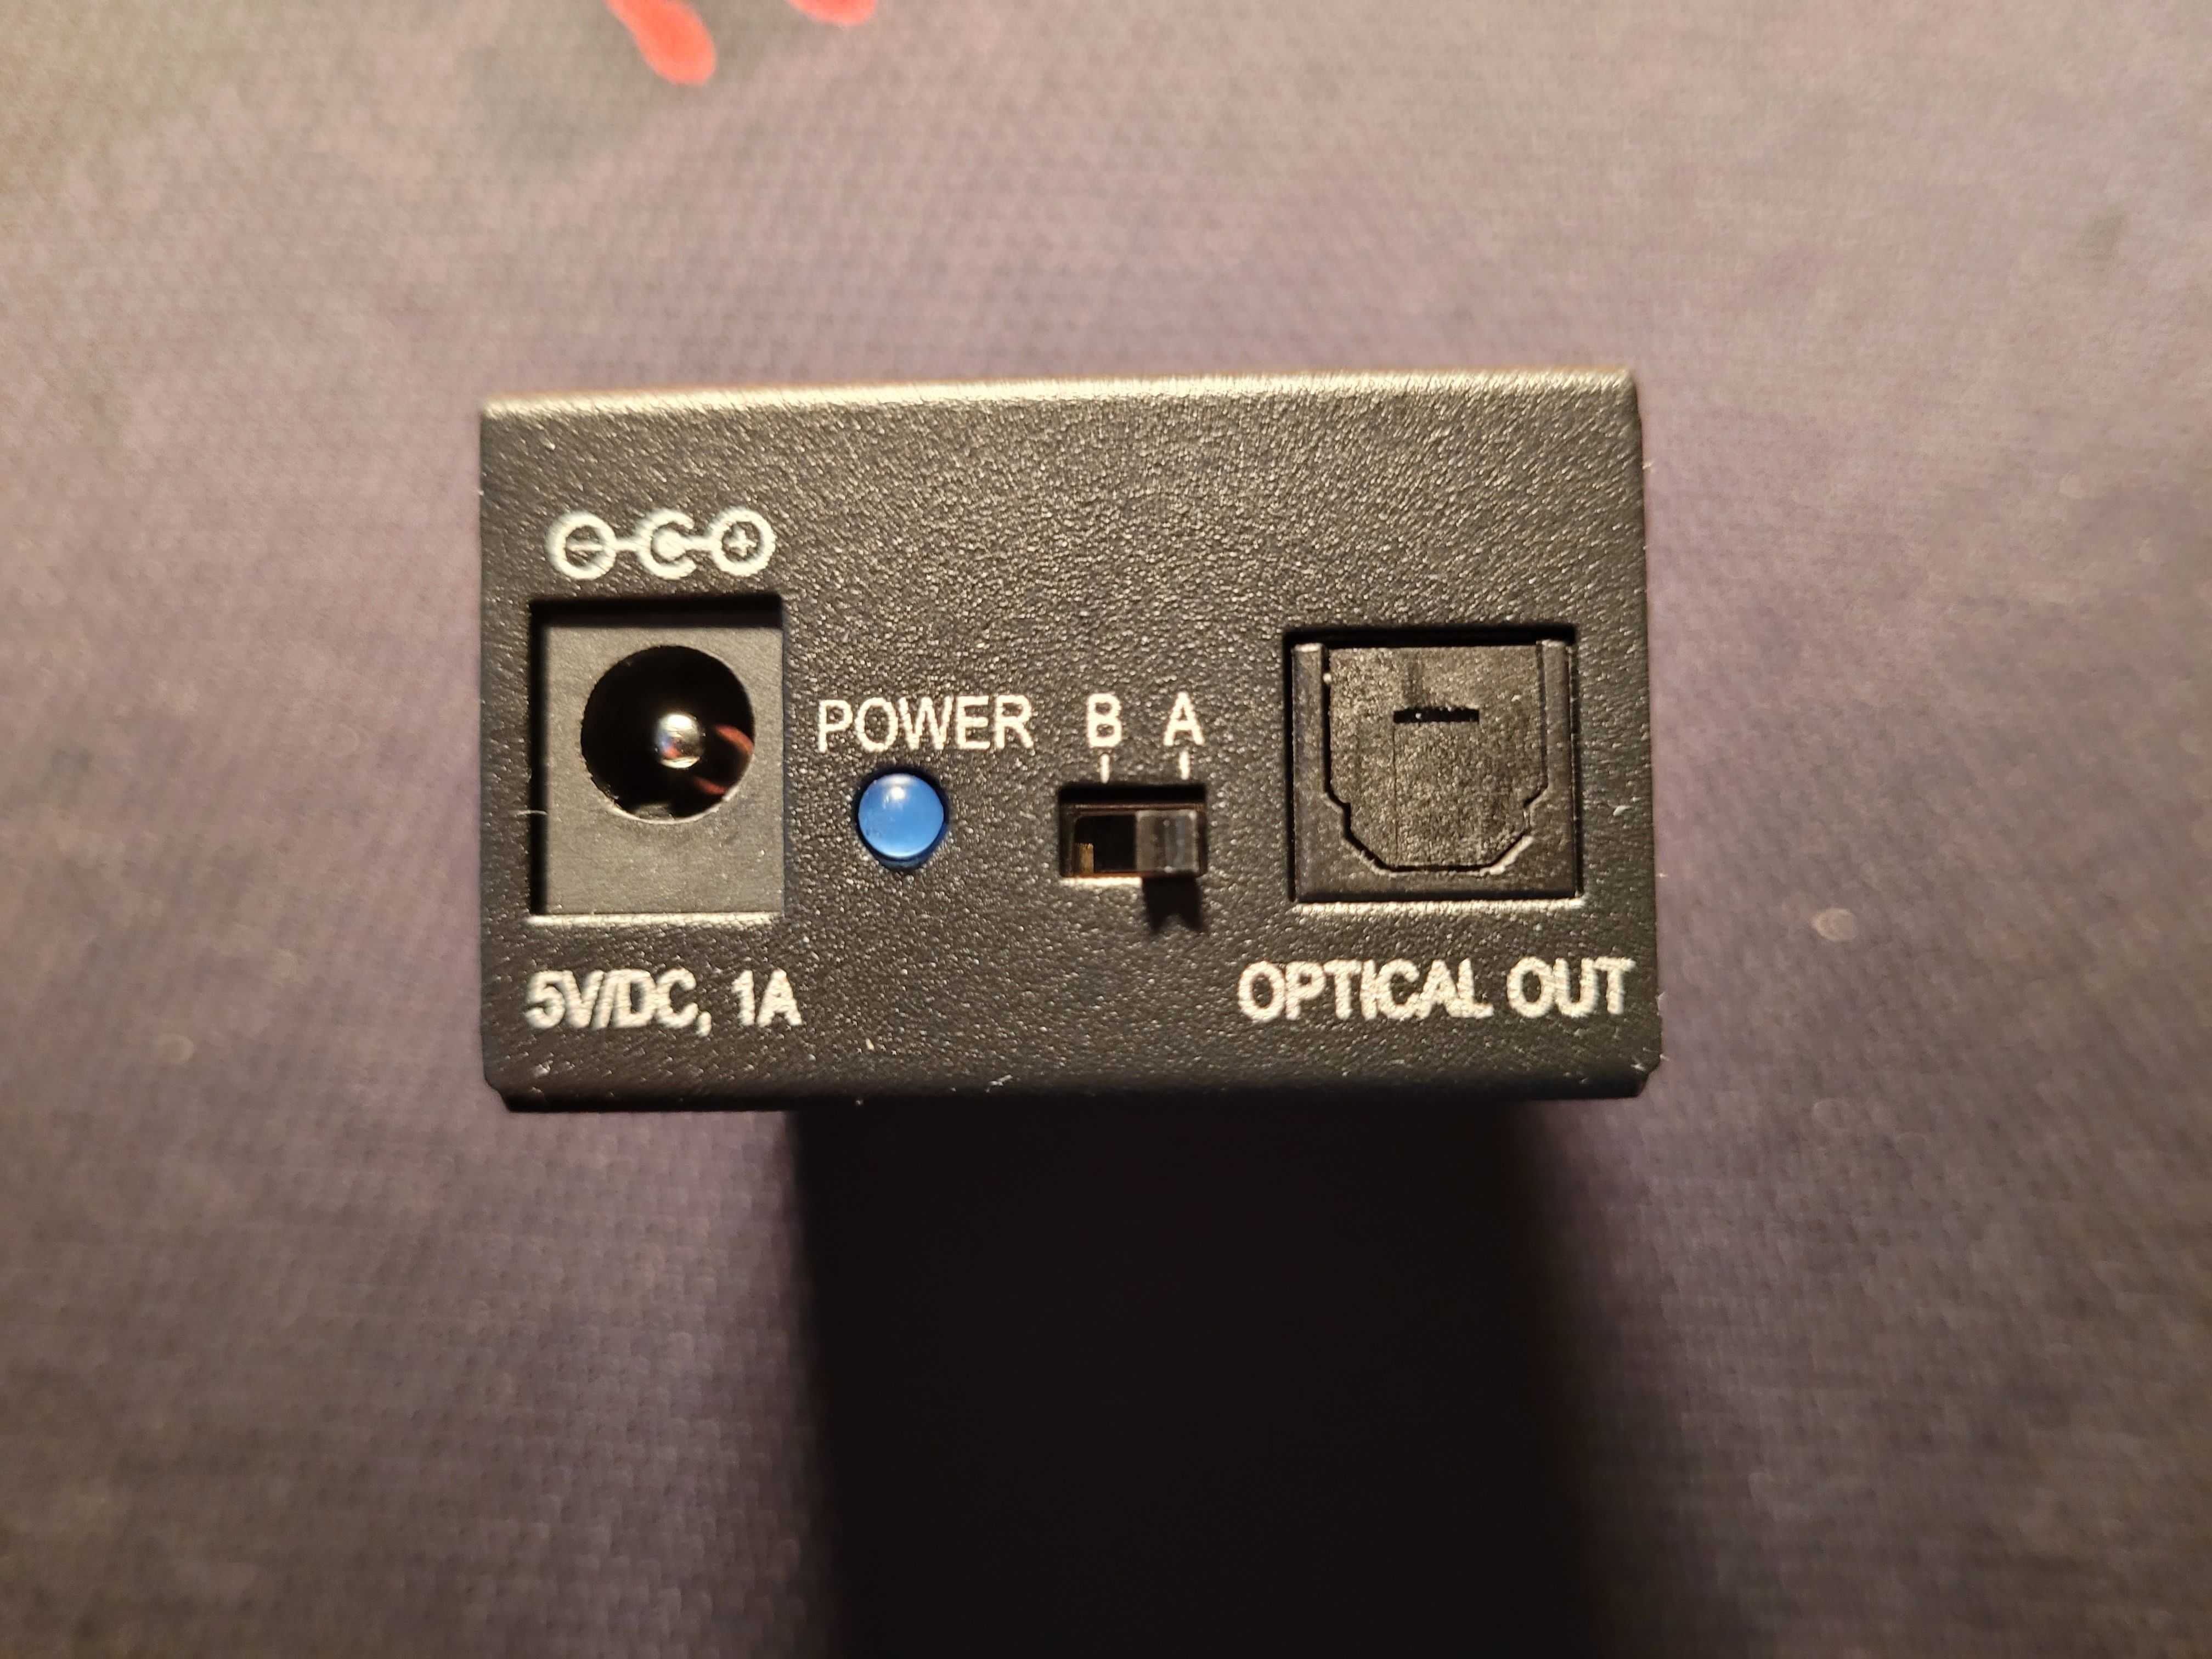 deleyCON Toslink 2x1 Switch SPDIF / przełącznik sygnału optycznego